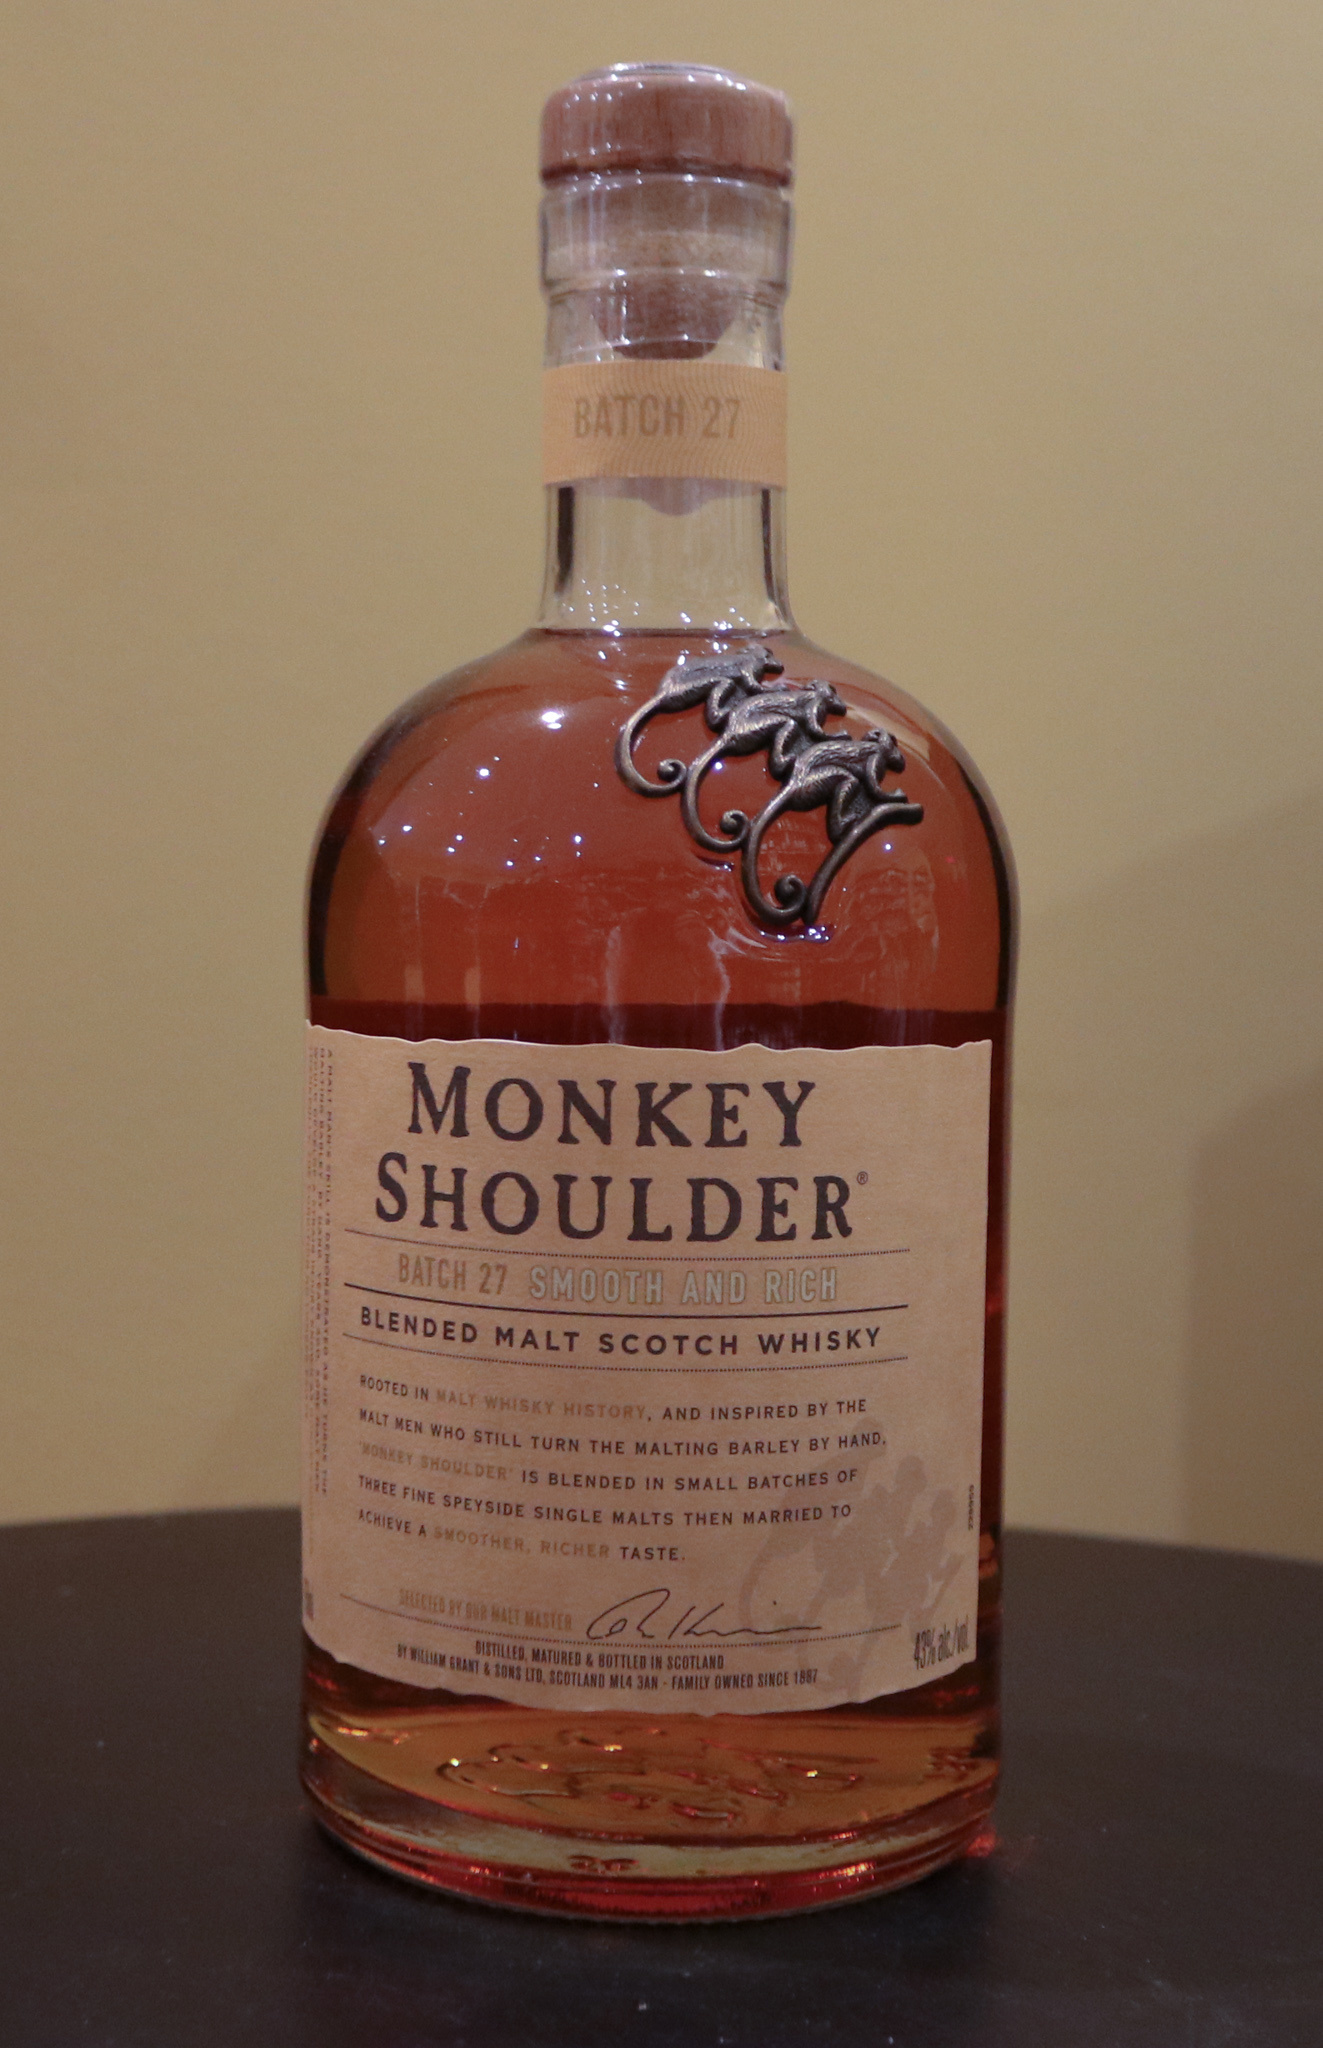 Monkey Shoulder Blended Malt Scotch